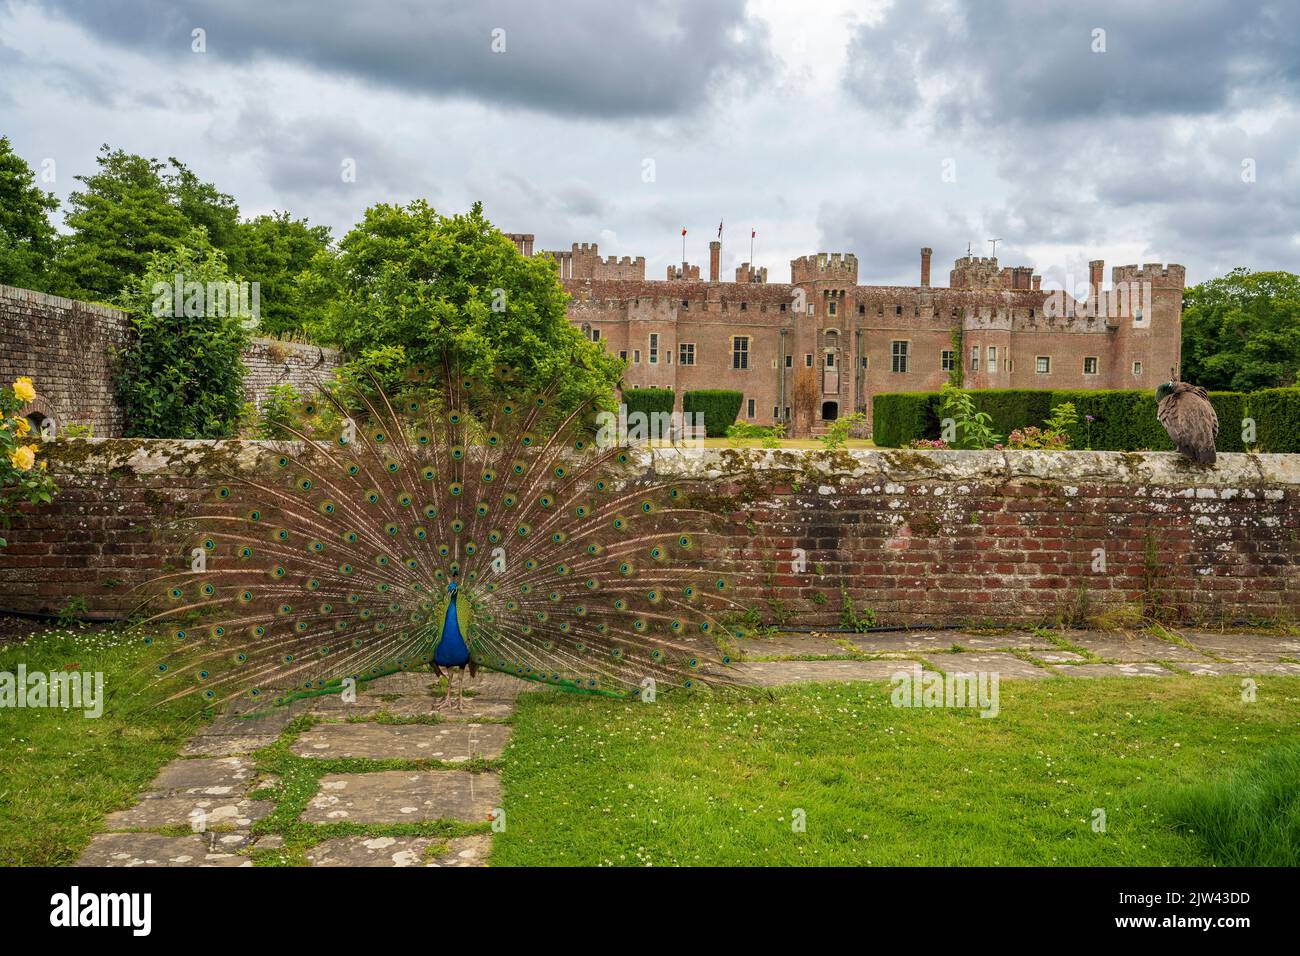 Ein Pfau und Peahen Streifen durch die Gärten von Herstmonceux Castle, Herstmonceux, East Sussex, England, Großbritannien Stockfoto